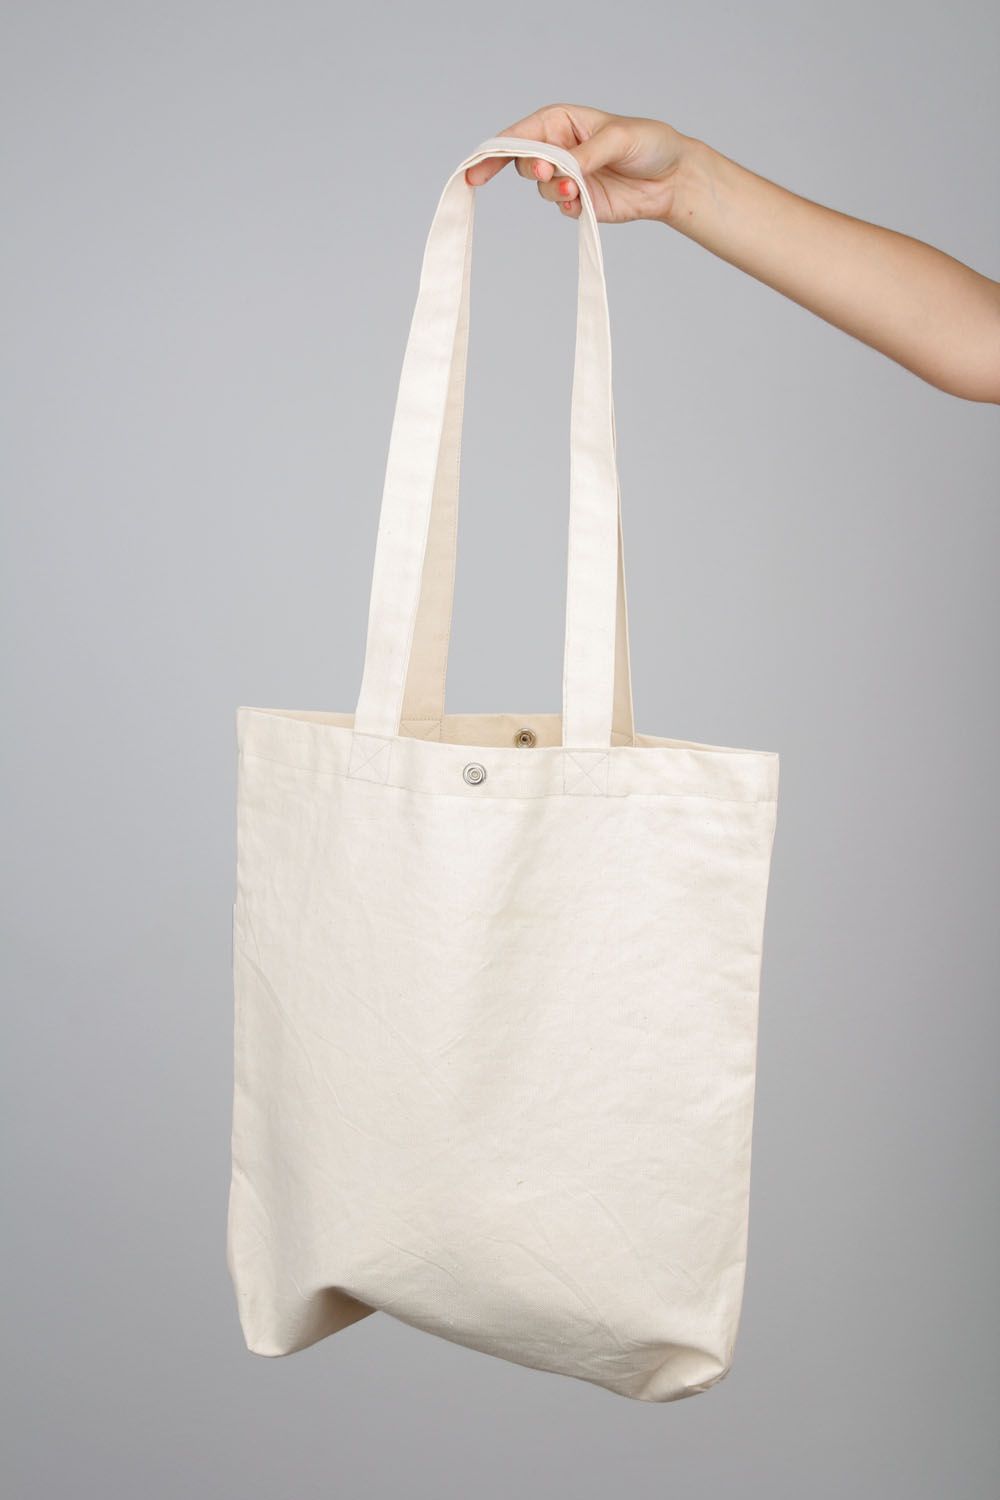 Grand sac à main blanc avec hibou fait main photo 3